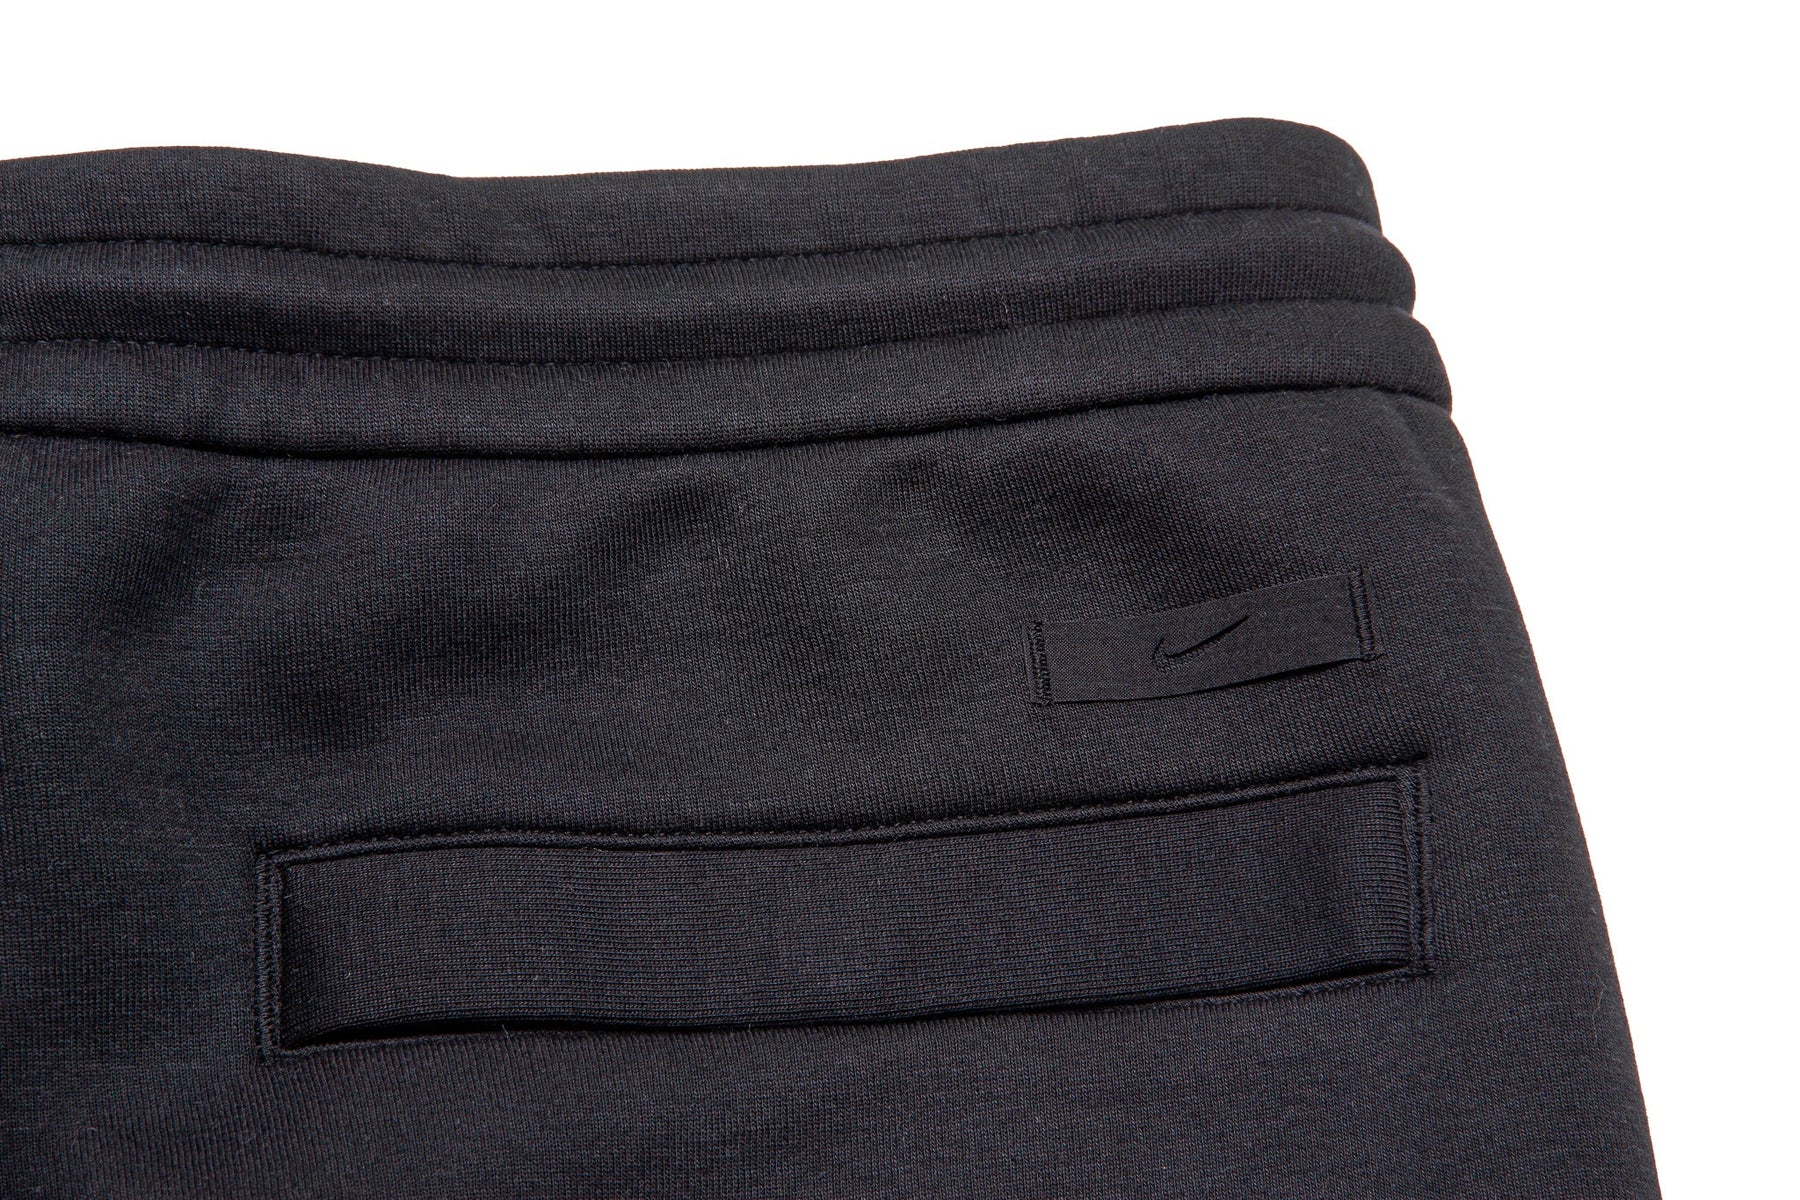 Nike Sportswear Tech Fleeece Tailored Pants "Black"